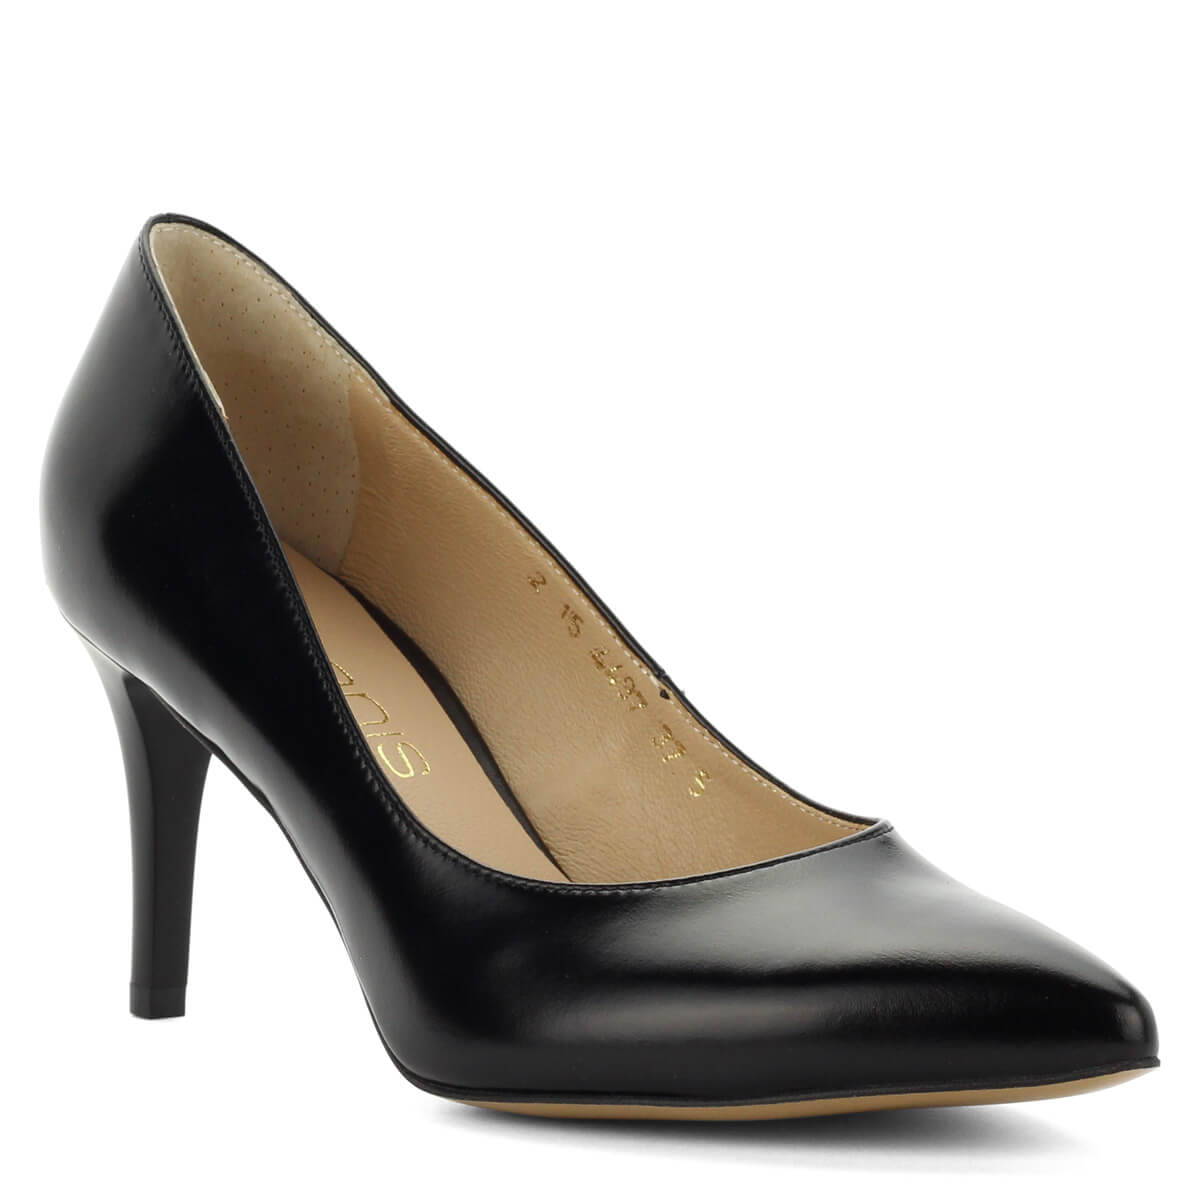 Anis alkalmi cipő fekete színben, 8 cm magas elegáns sarokkal. Kívül belül természetes bőrből készült.